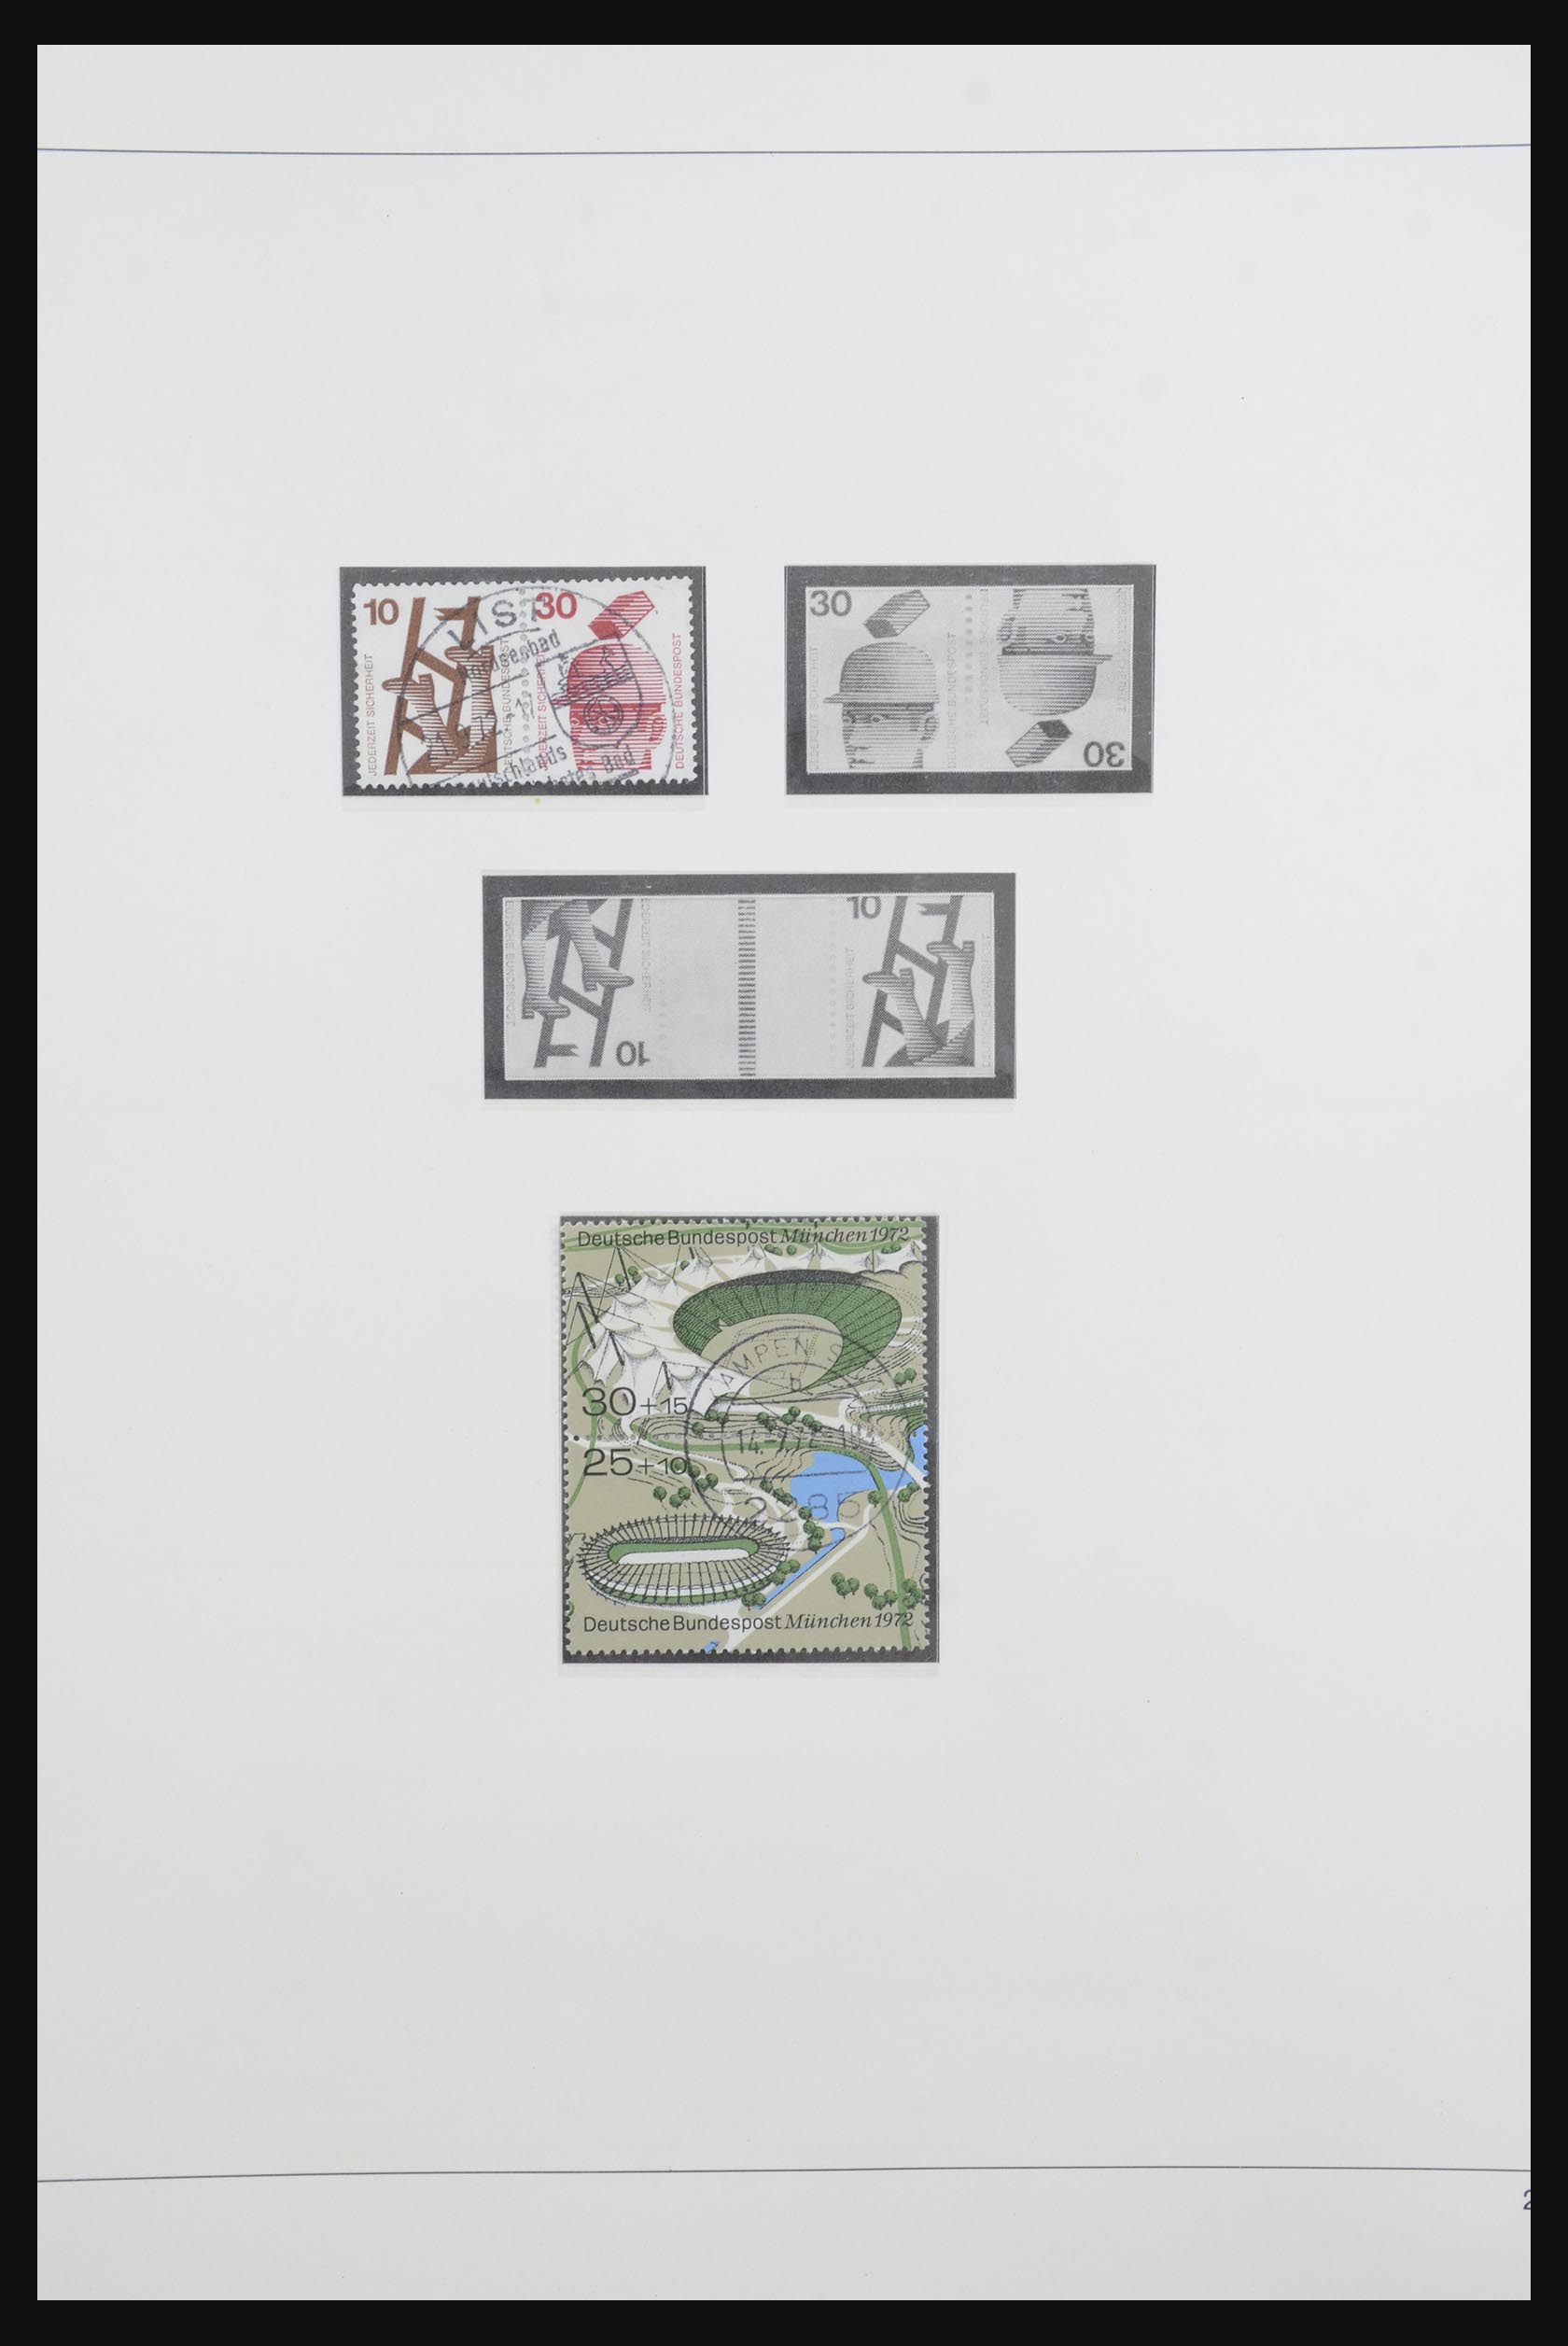 31842 039 - 31842 Bundespost combinations 1951-2003.